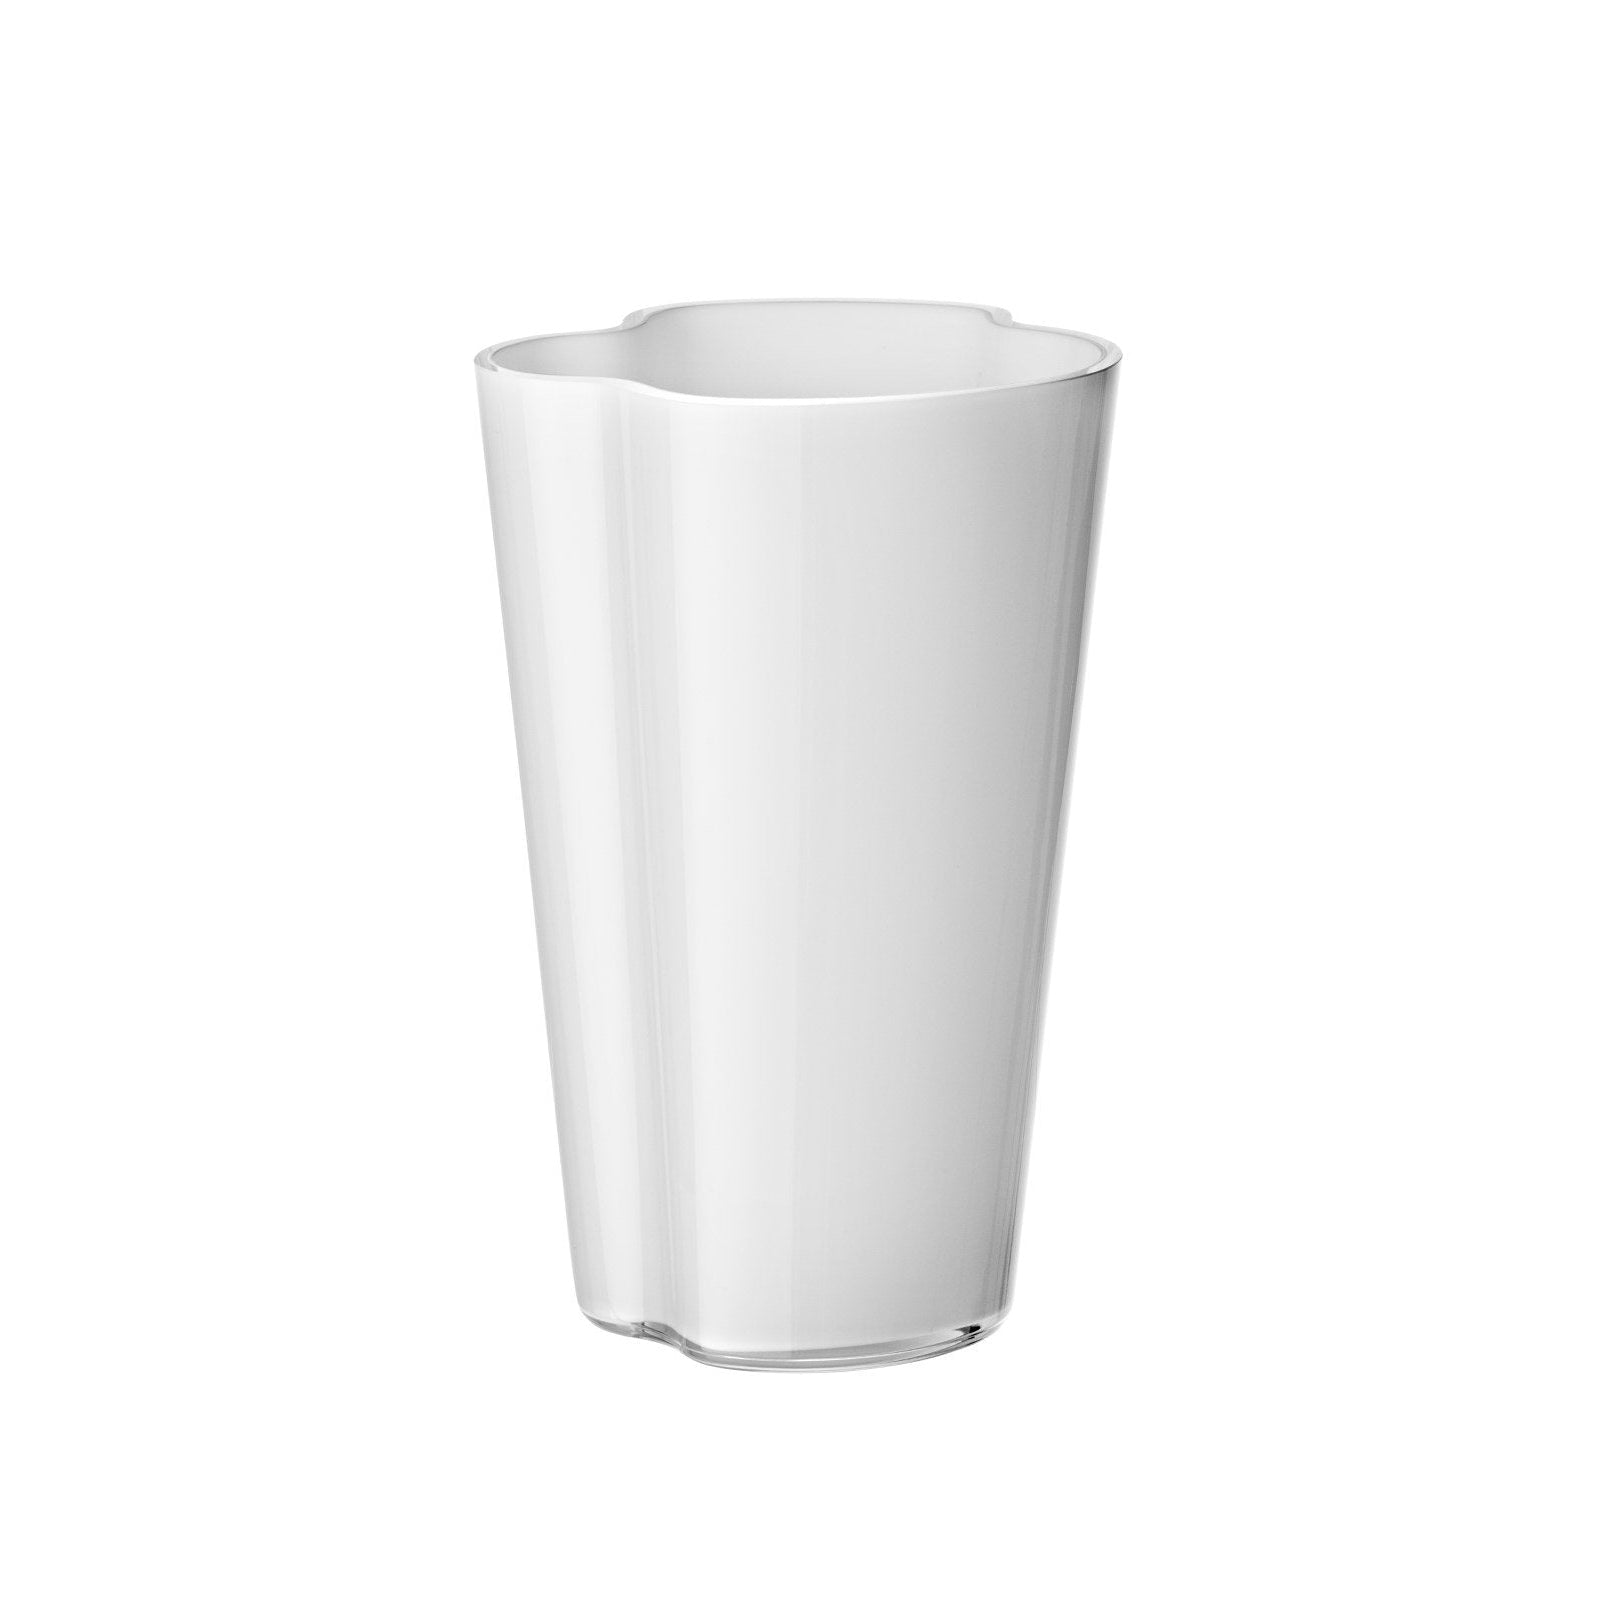 Iittala alvar aalto vase blanc, 22 cm